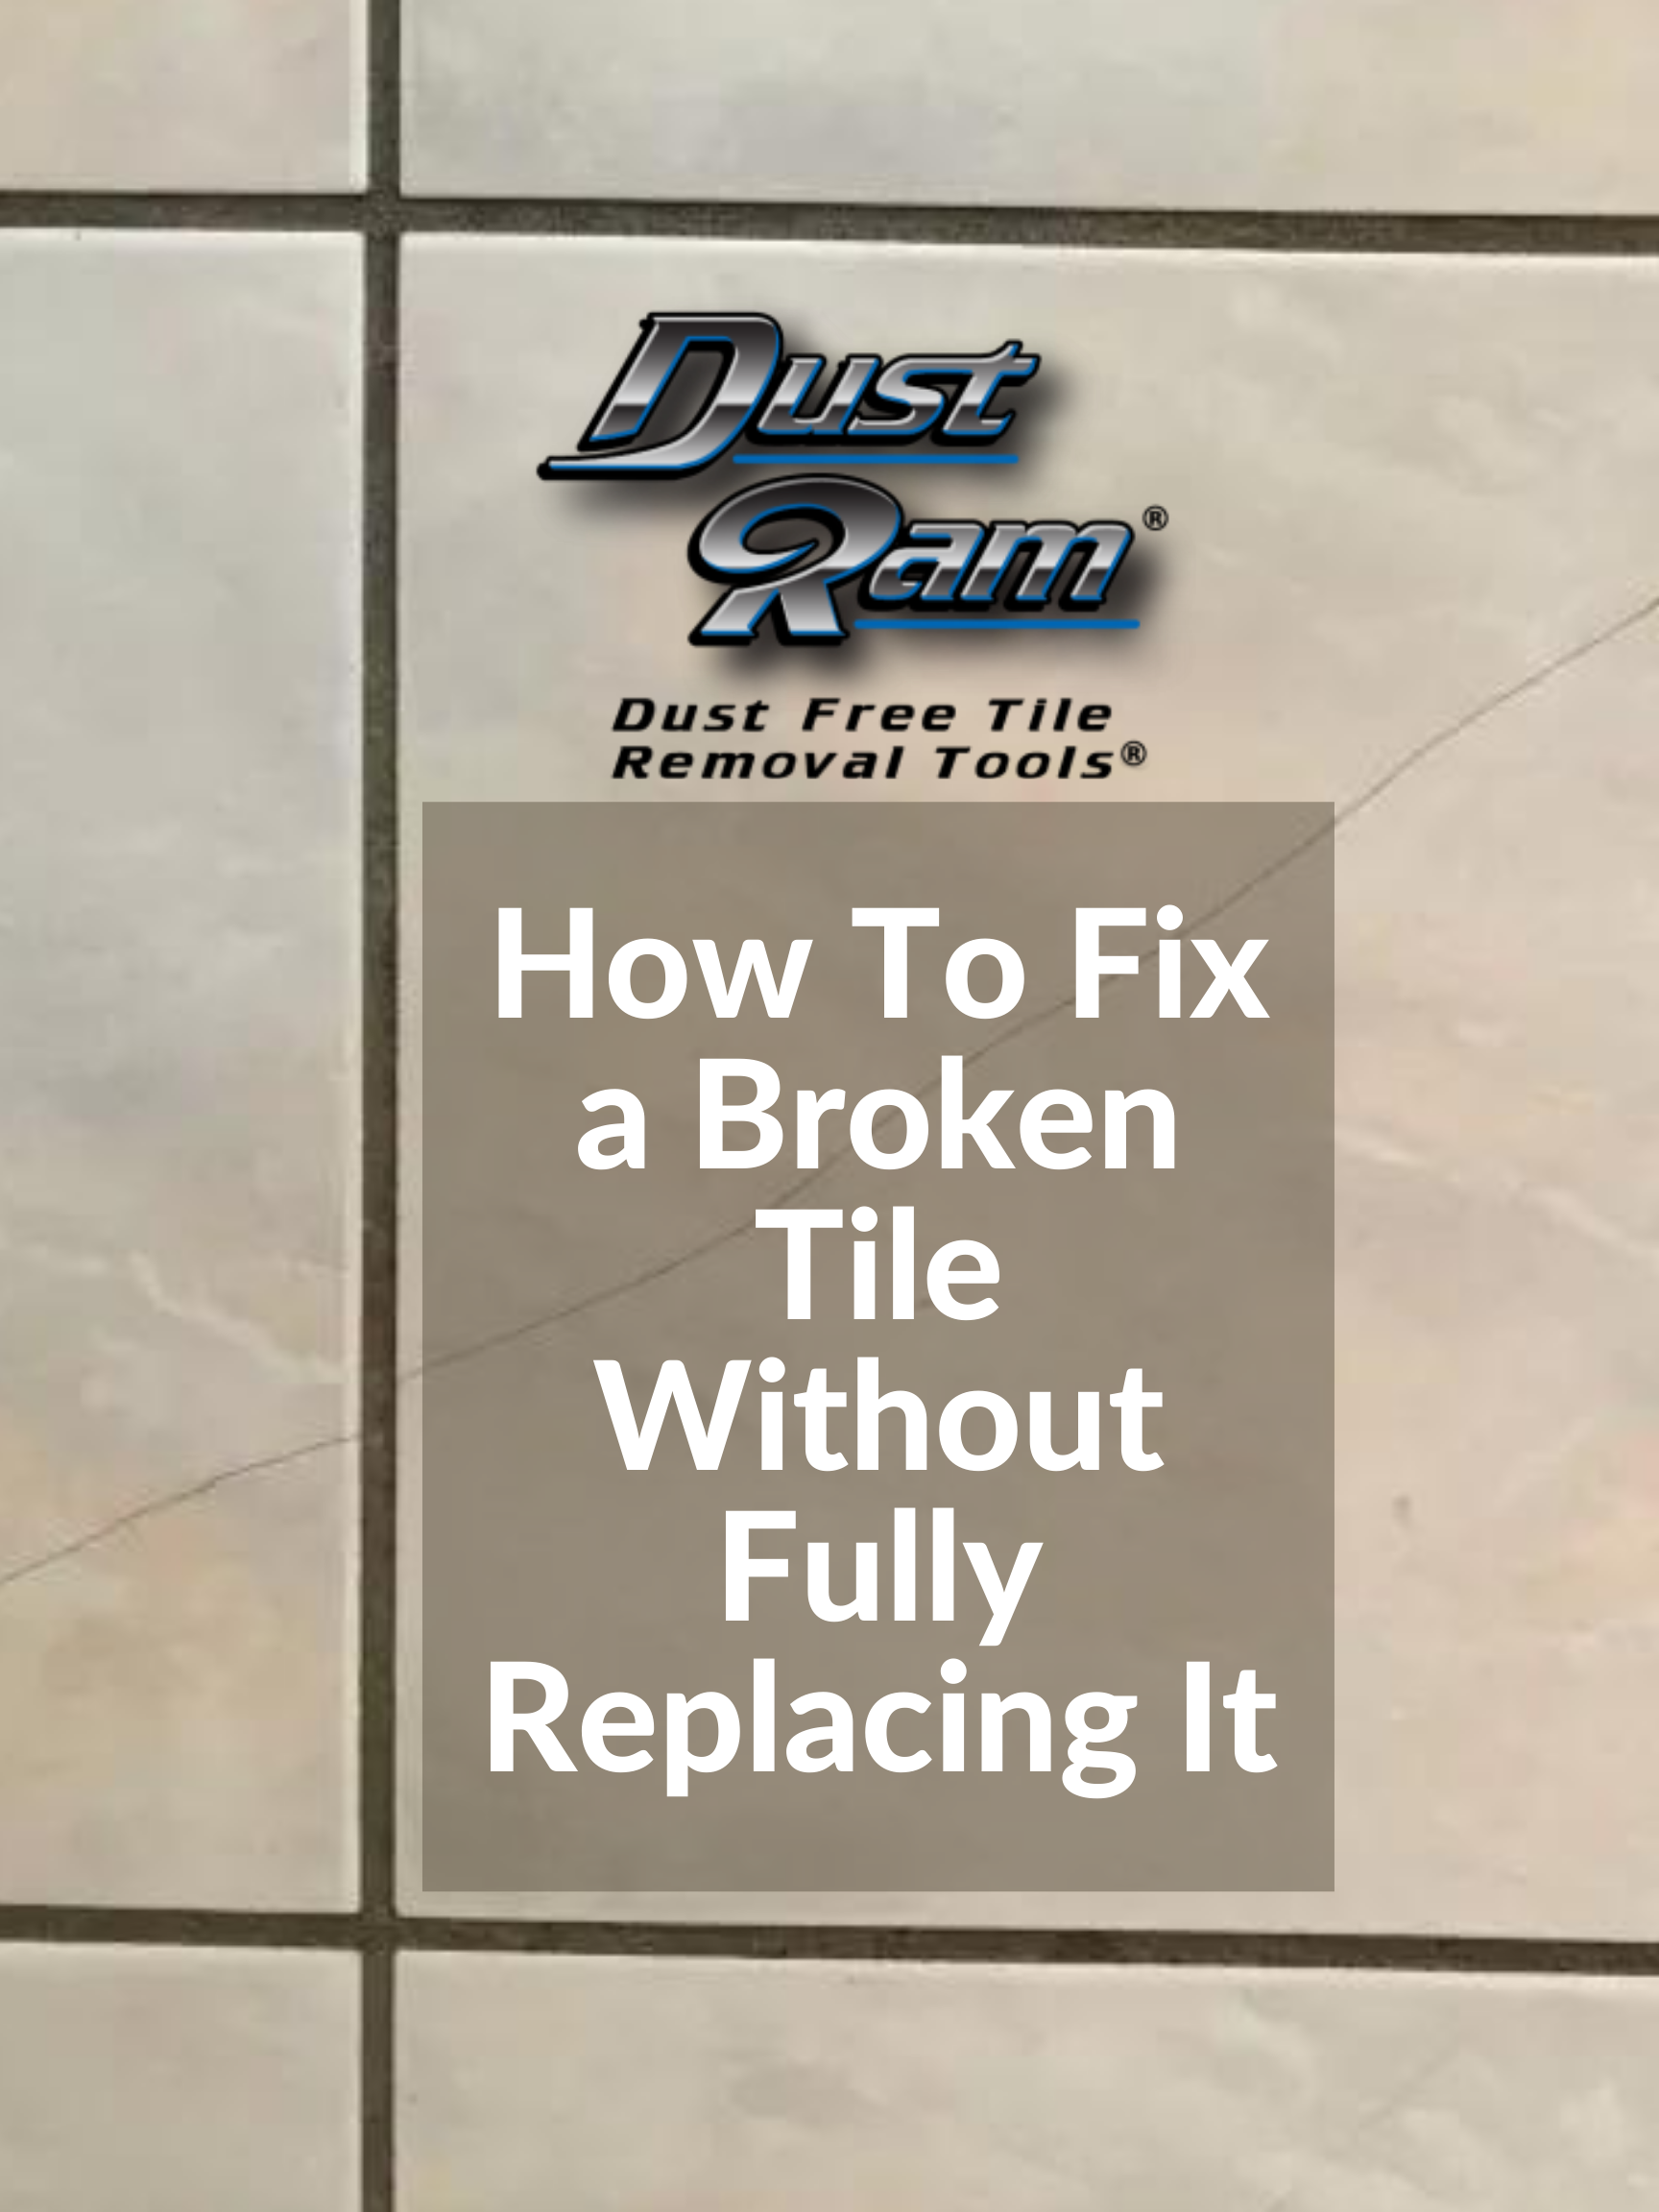 Tile Repair Kit, Ceramic Tile Crack Repair Kit, Ceramic Repair Kit, Ceramic Tile Repair Filler - Quickly Fix Tile Chips, Cracks and Holes. for